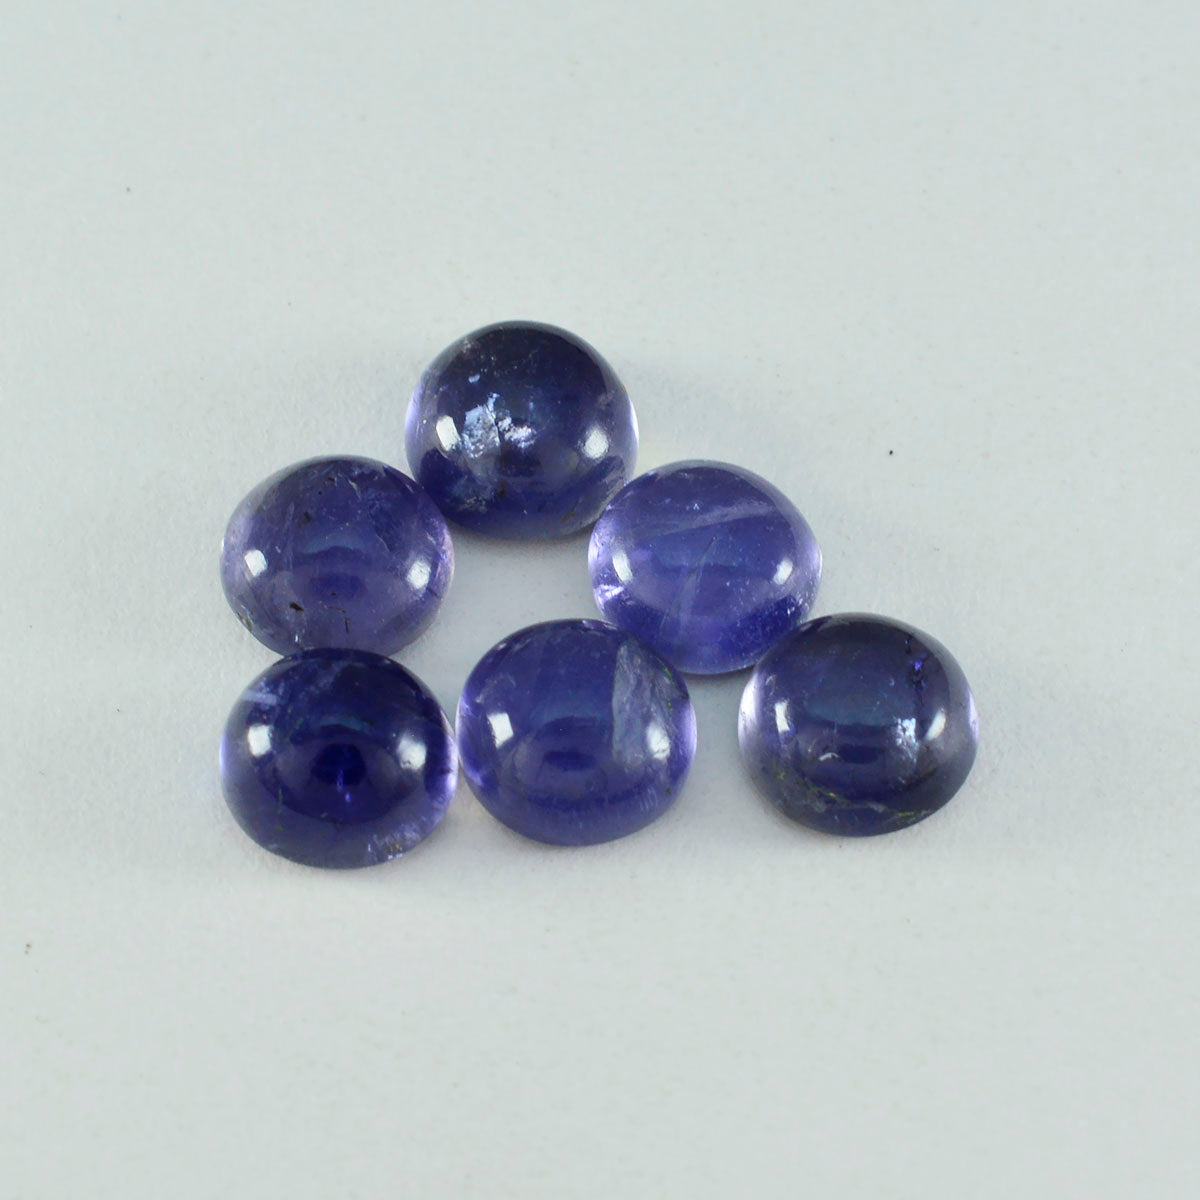 Riyogems 1PC blauwe ioliet cabochon 14x14 mm ronde vorm mooie kwaliteitsedelsteen